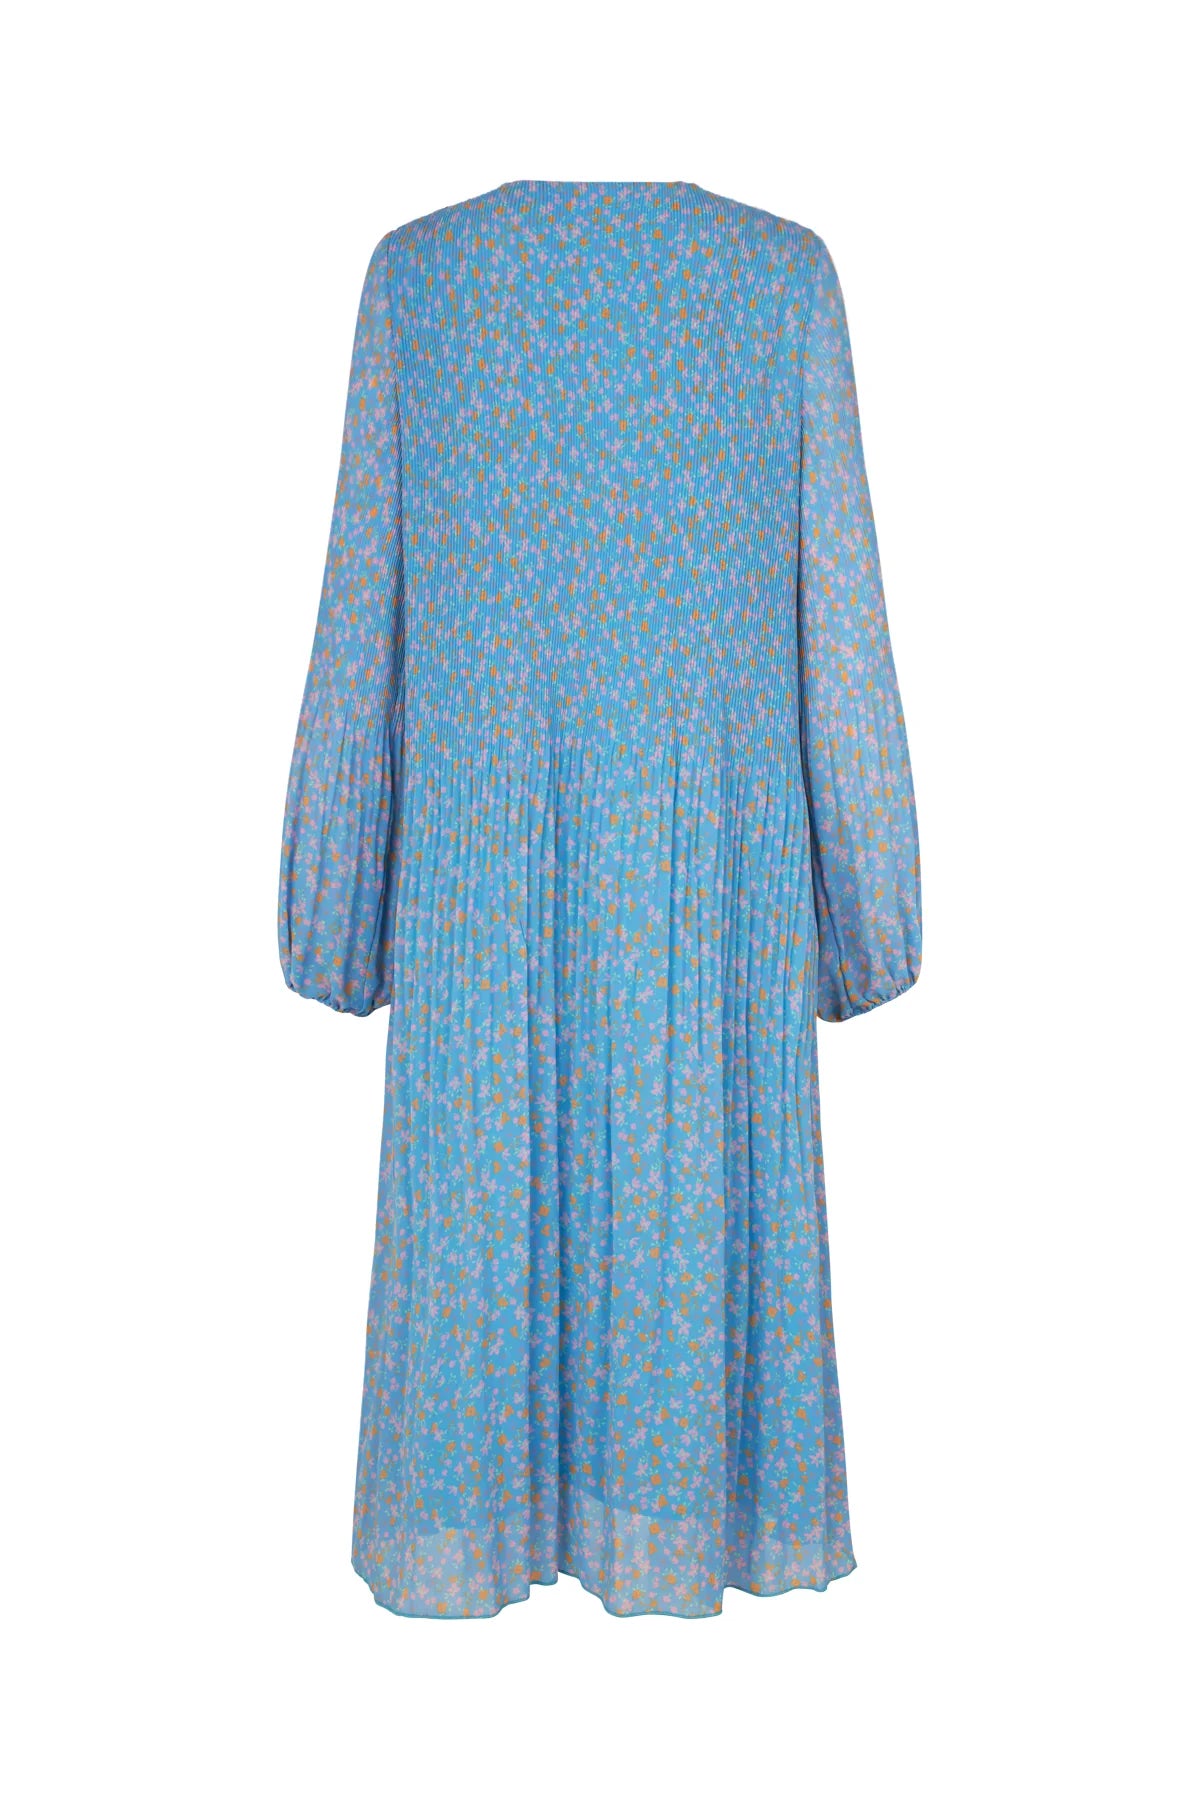 Melinda Dress - Floral Blue by Crās